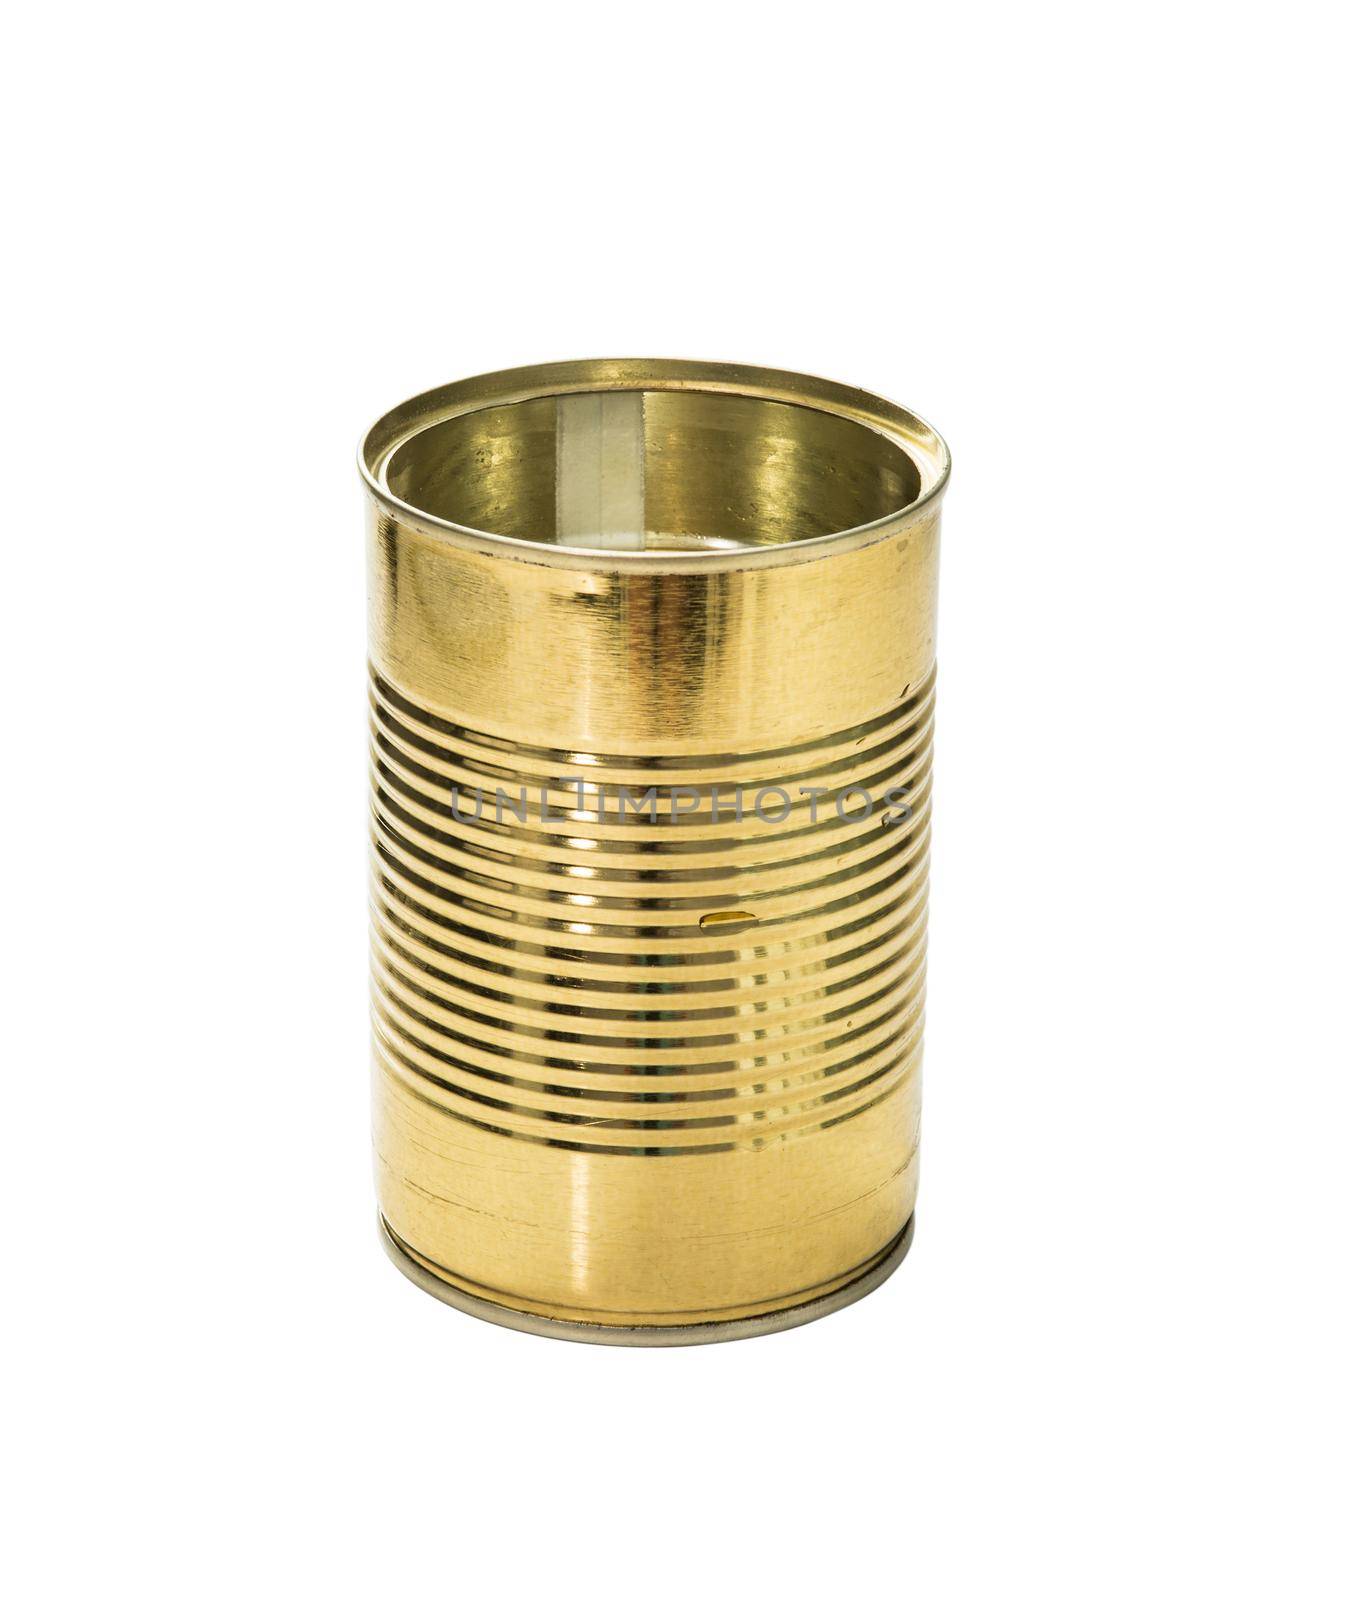 golden empty jar by tan4ikk1